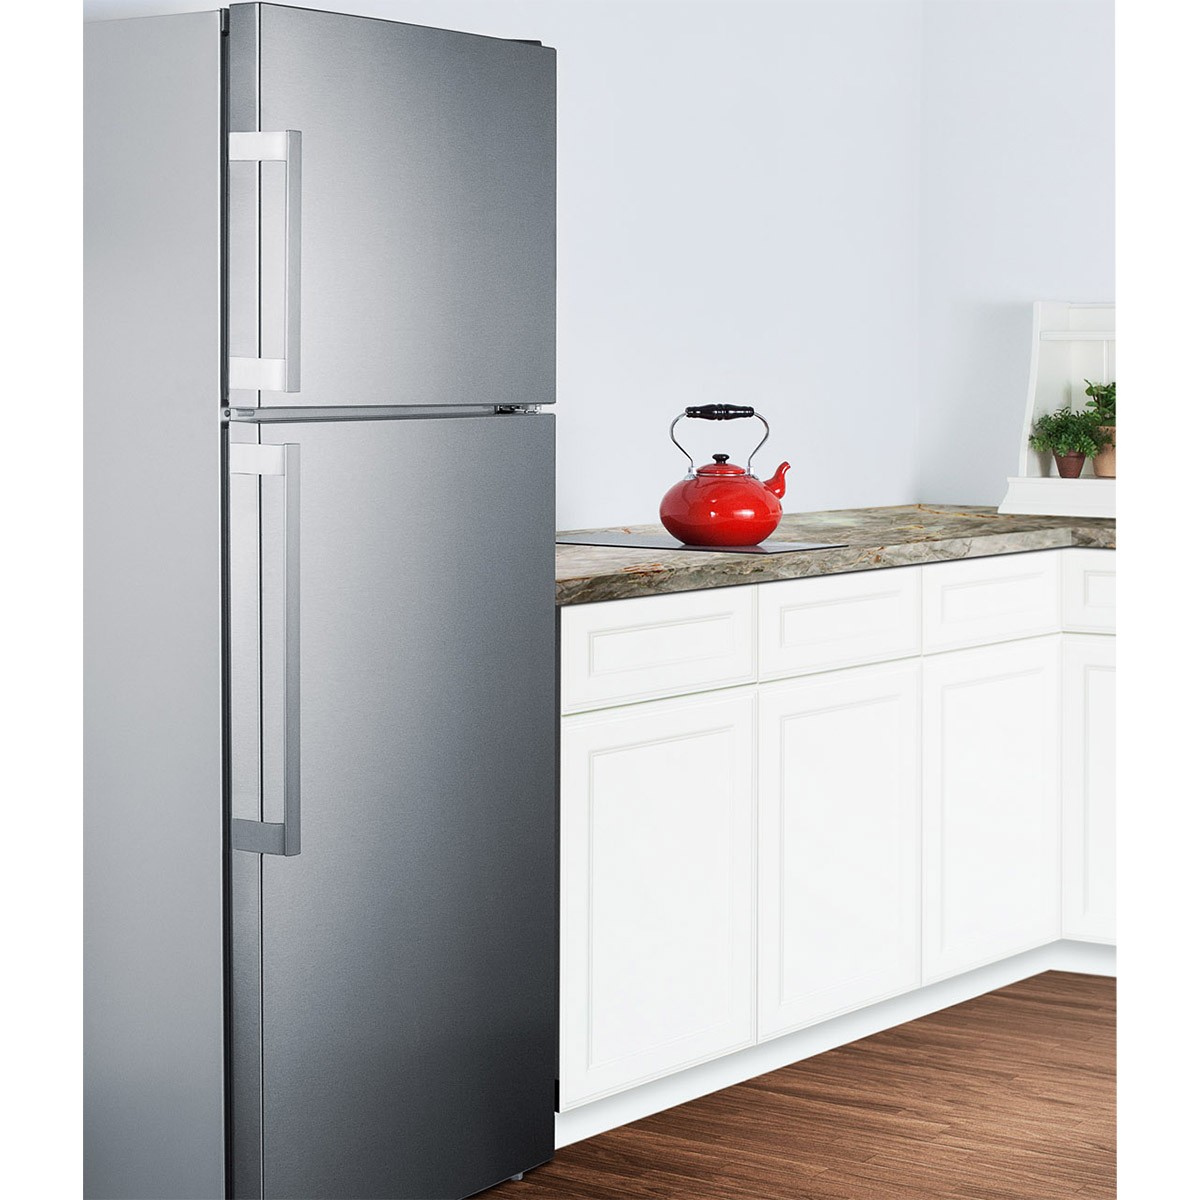 Узкий холодильник 50 купить. Неглубокий холодильник. Узкий холодильник 40 см. Холодильники узкие и неглубокие. Узкий холодильник 40 см двухкамерный.